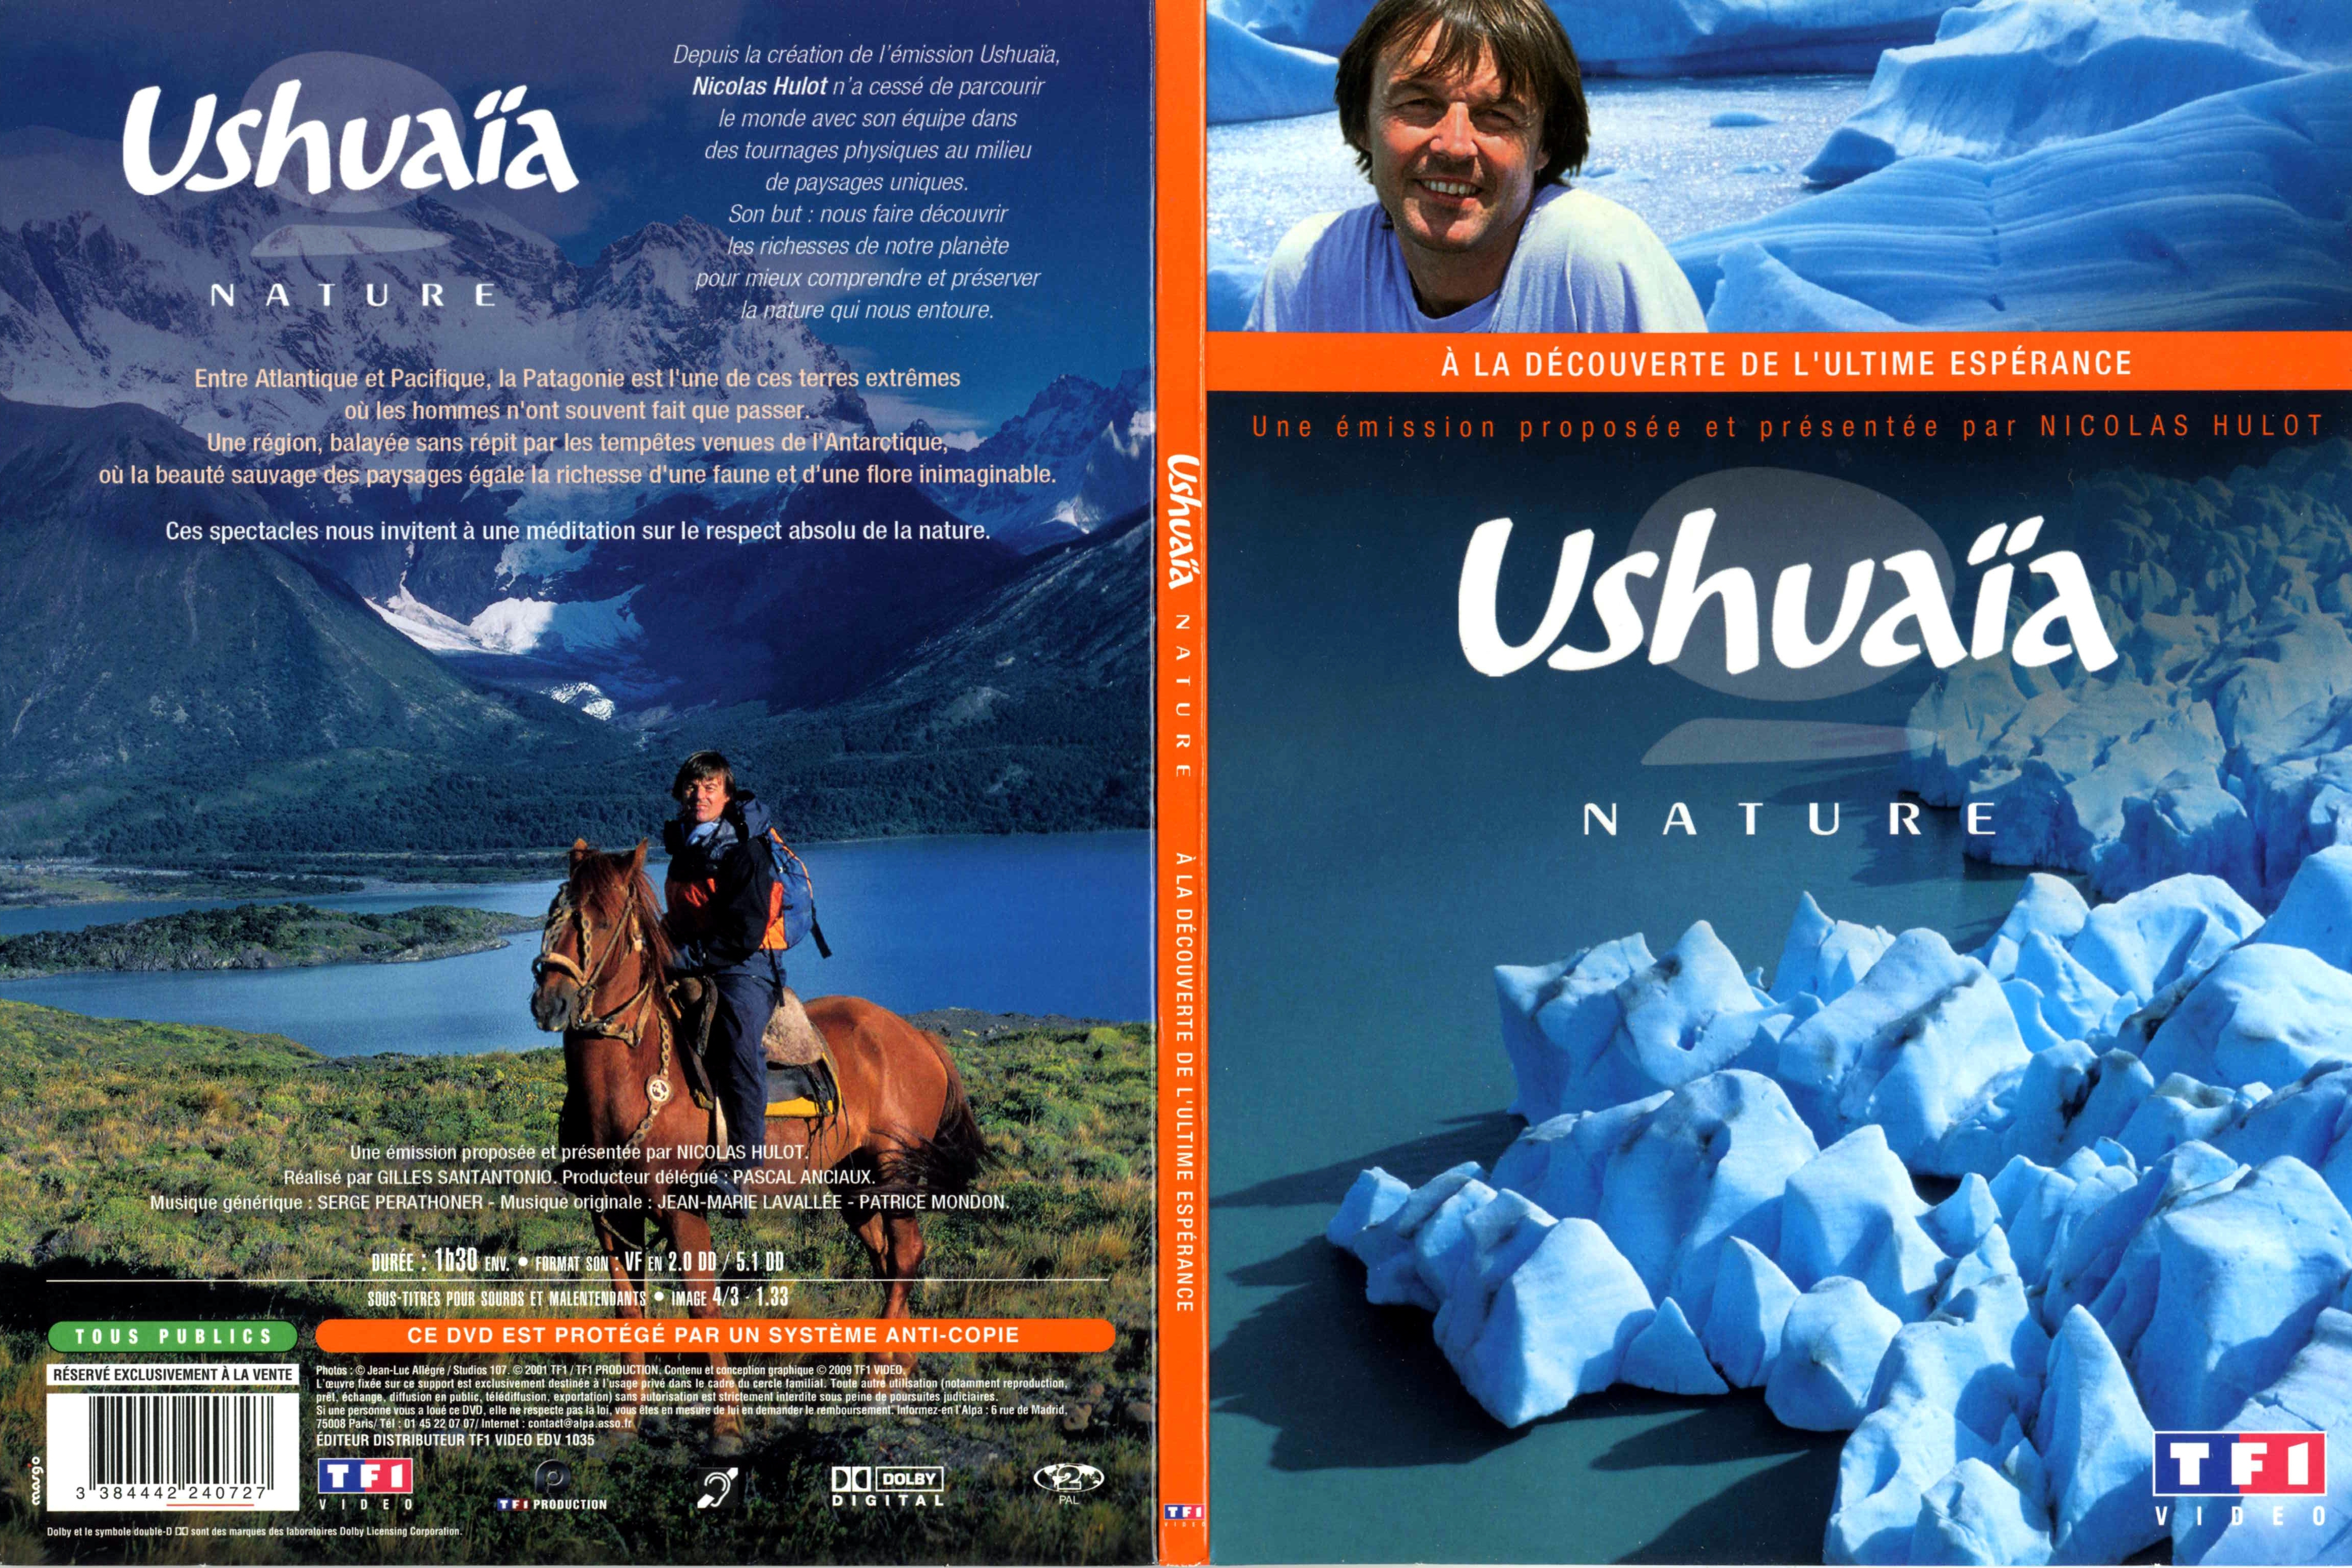 Jaquette DVD Ushuaia Nature - A la dcouverte de l